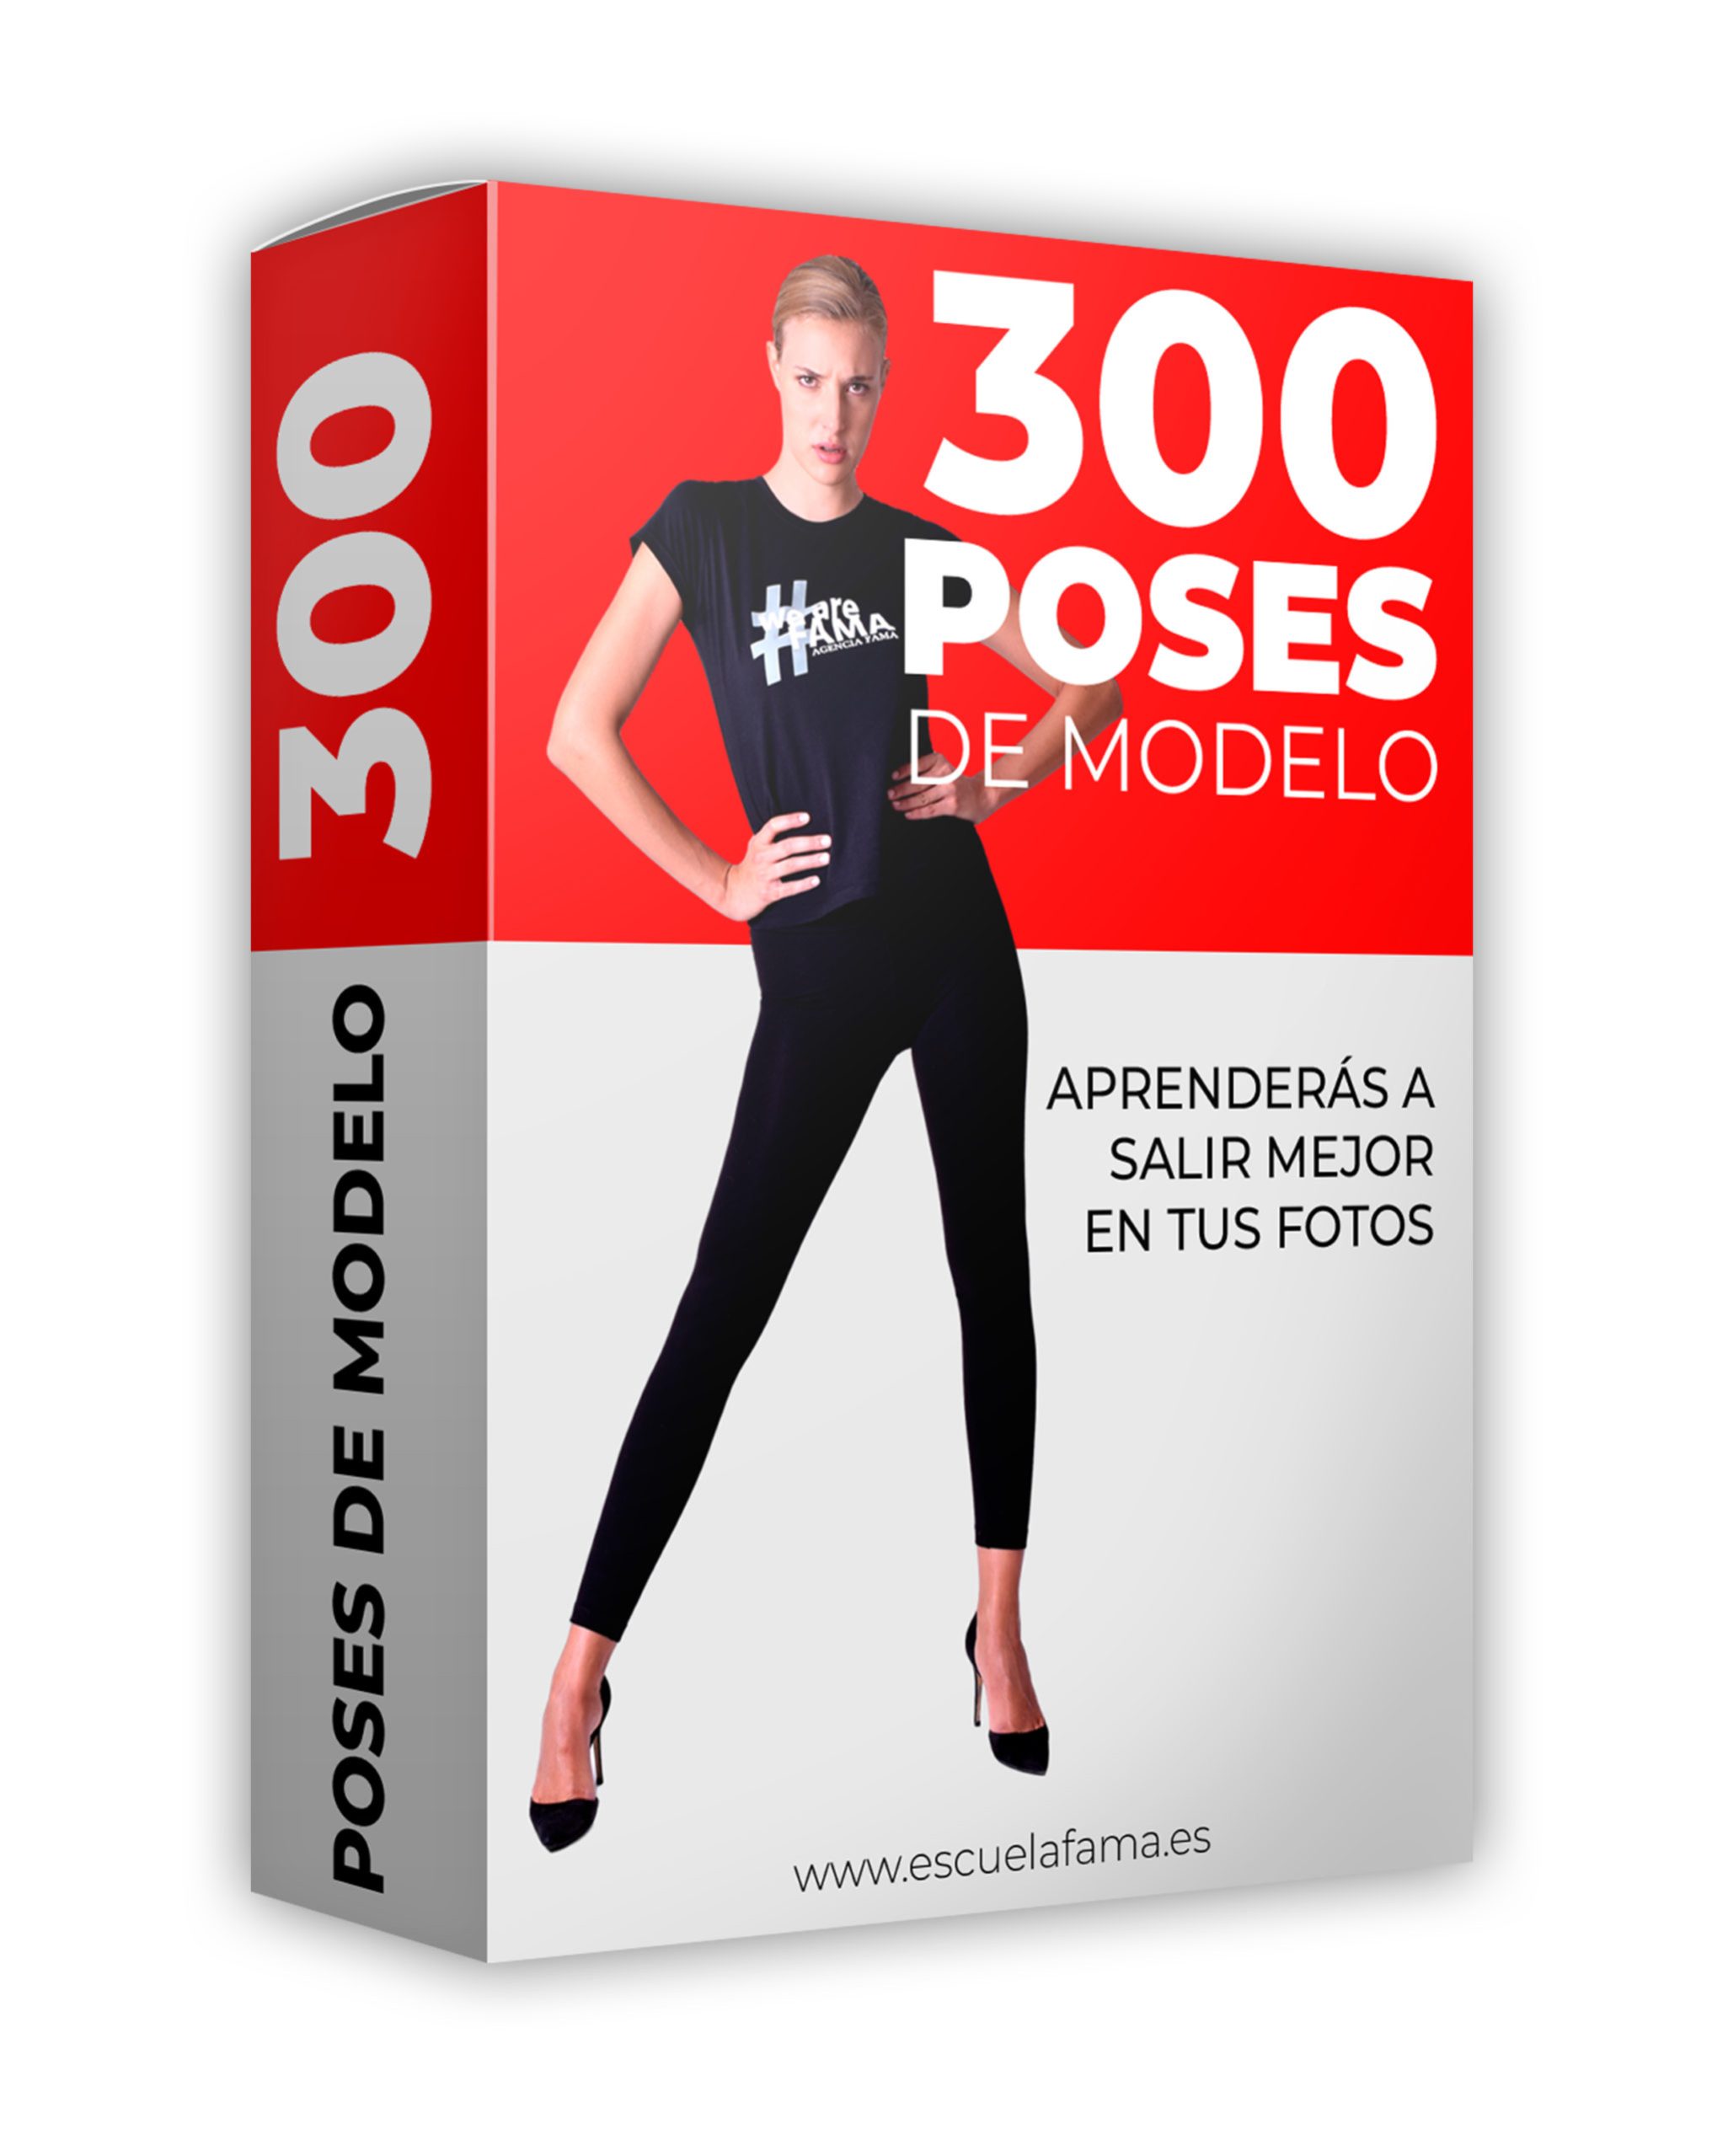 300 Poses de Modelo - FAMA Academy